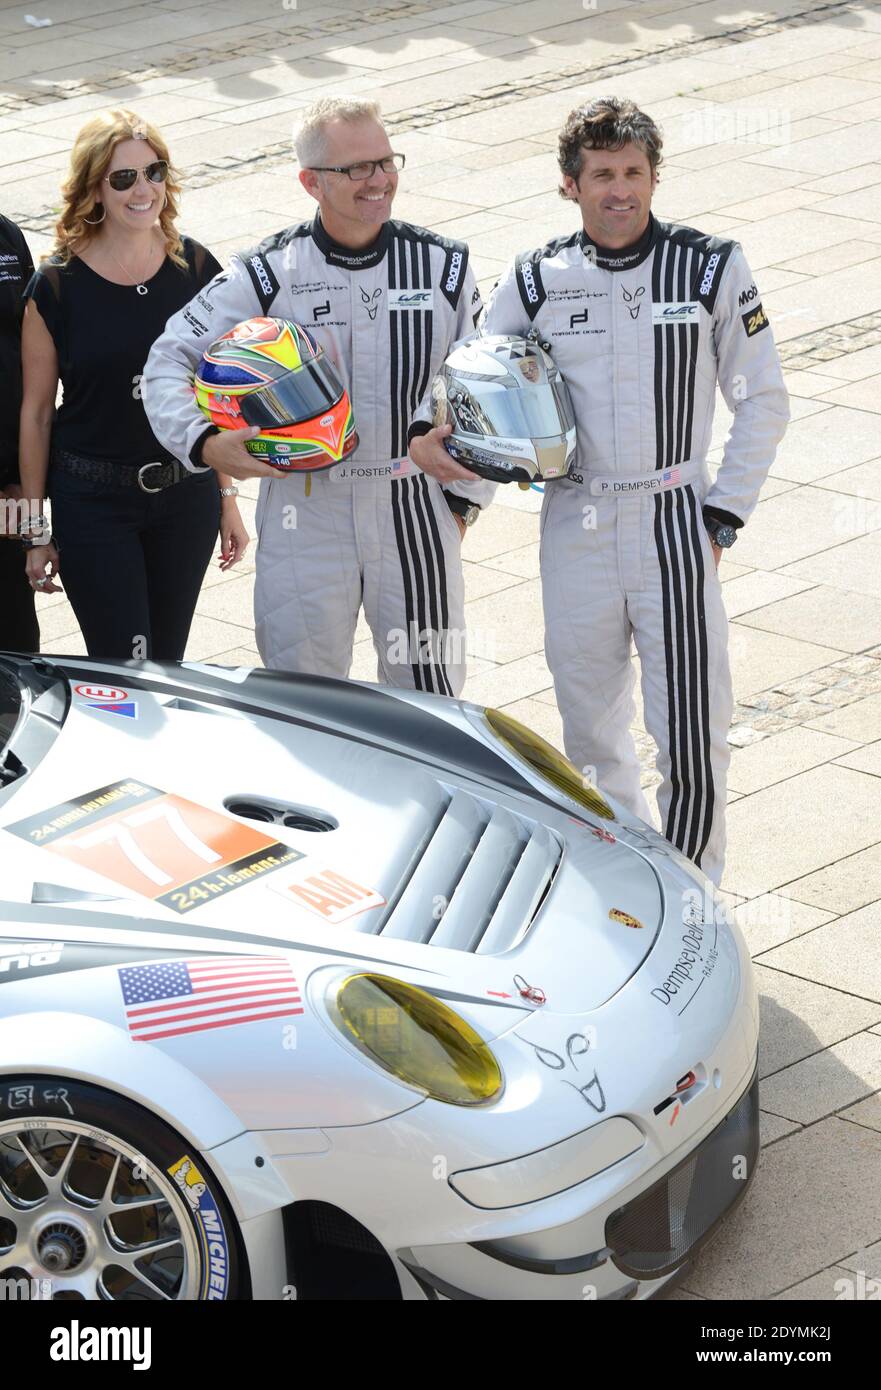 Porsche pose immagini e fotografie stock ad alta risoluzione - Alamy